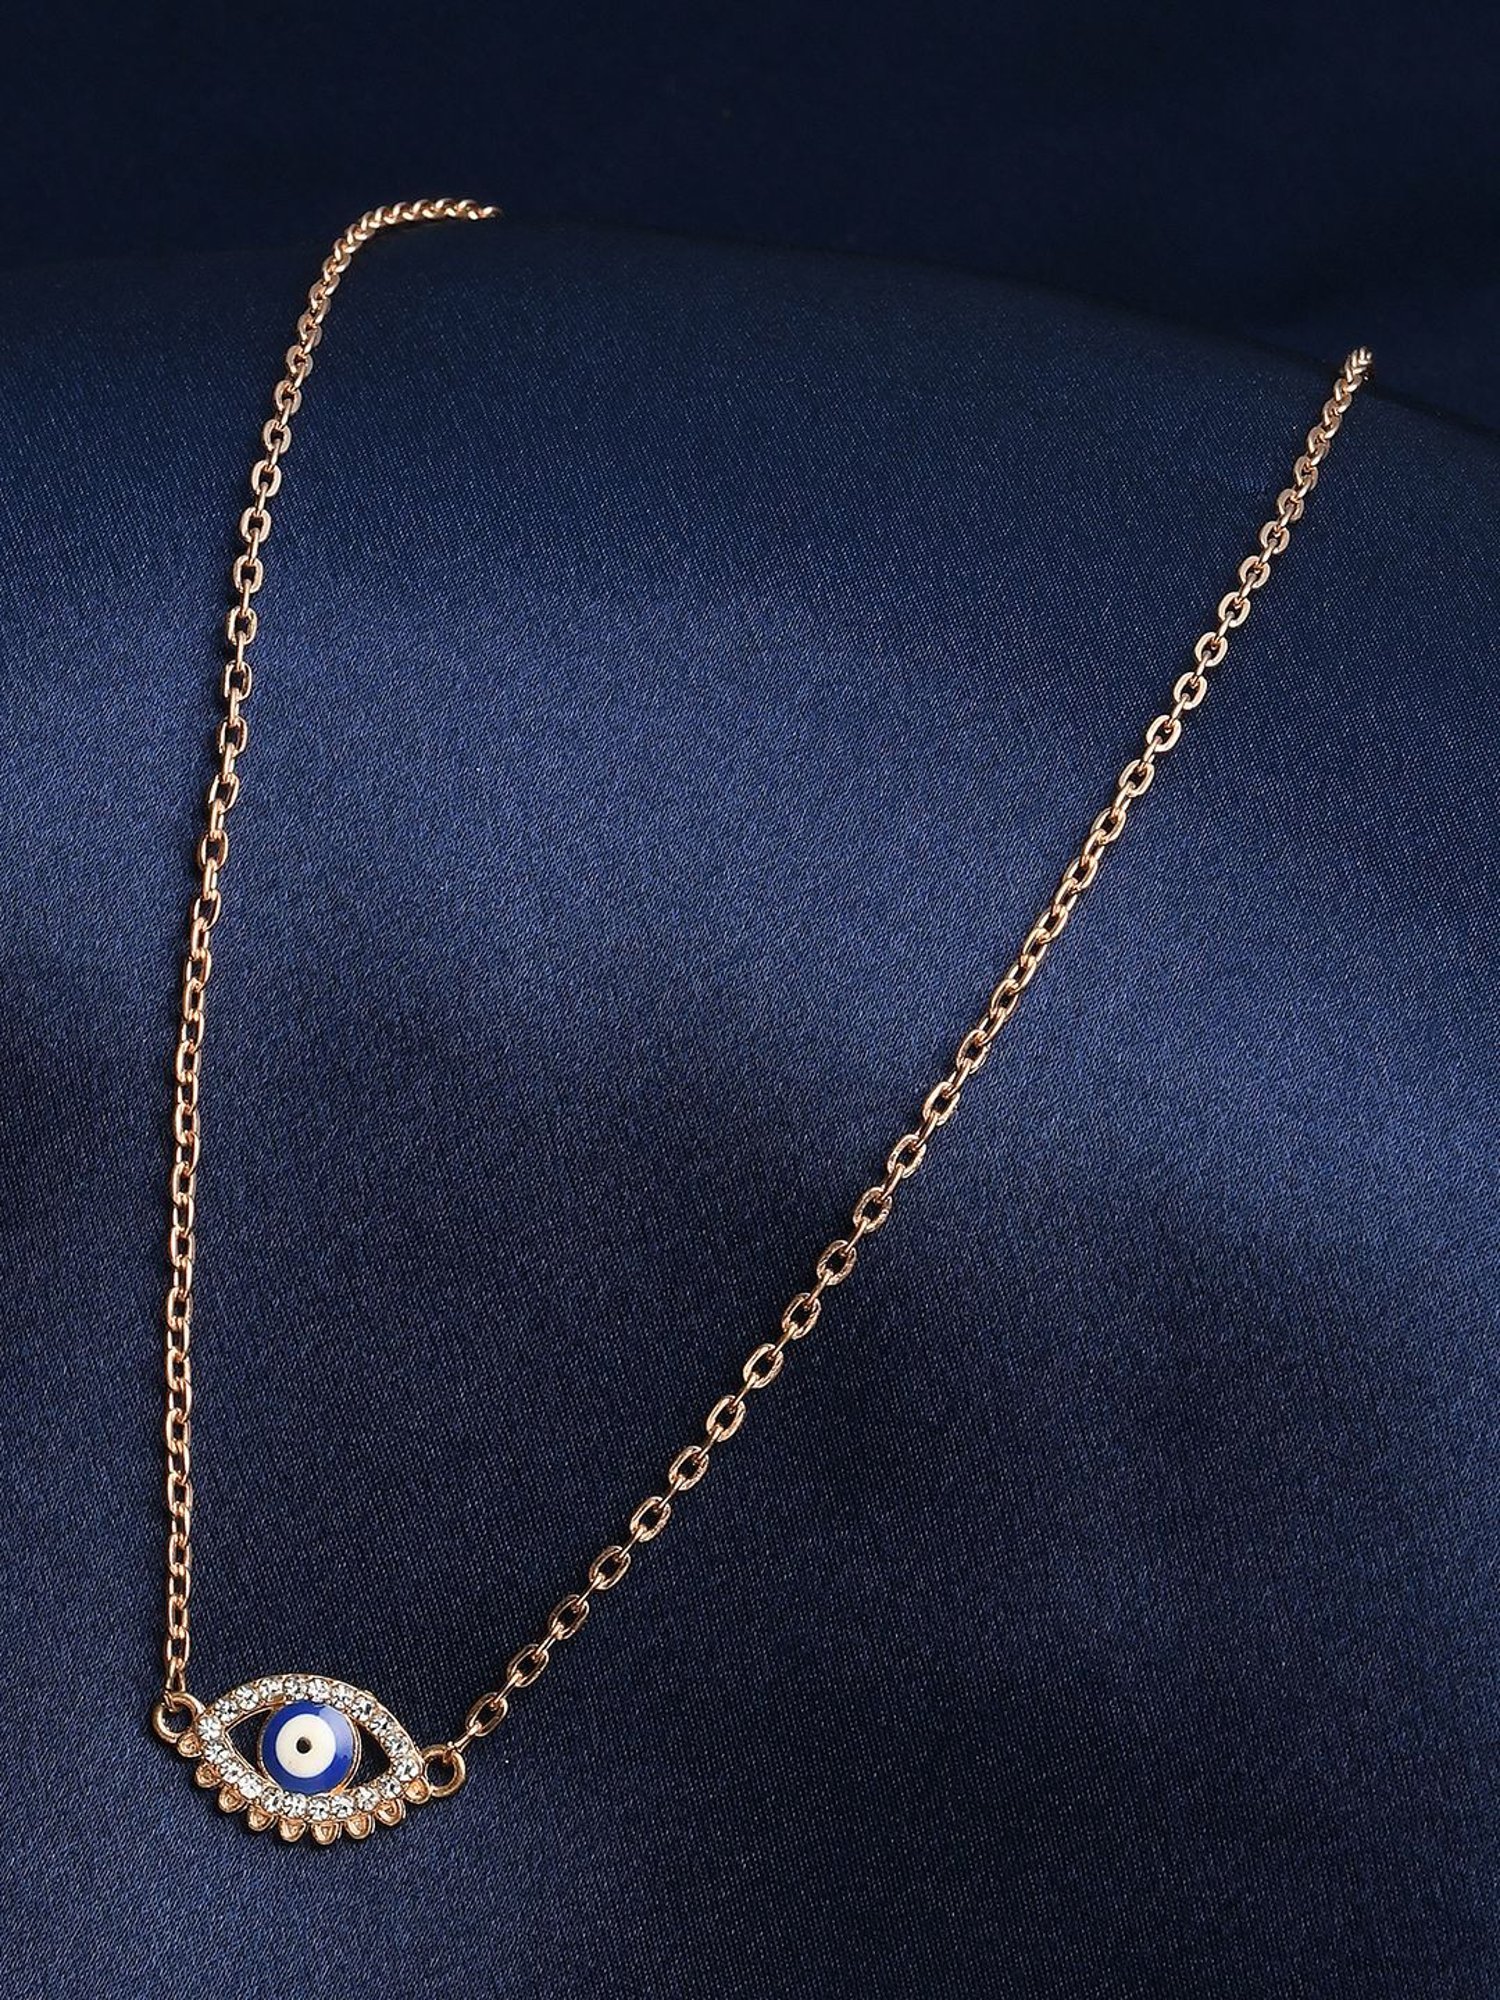 Blue Stone Pendant Long Golden Necklace – Neshe Fashion Jewelry